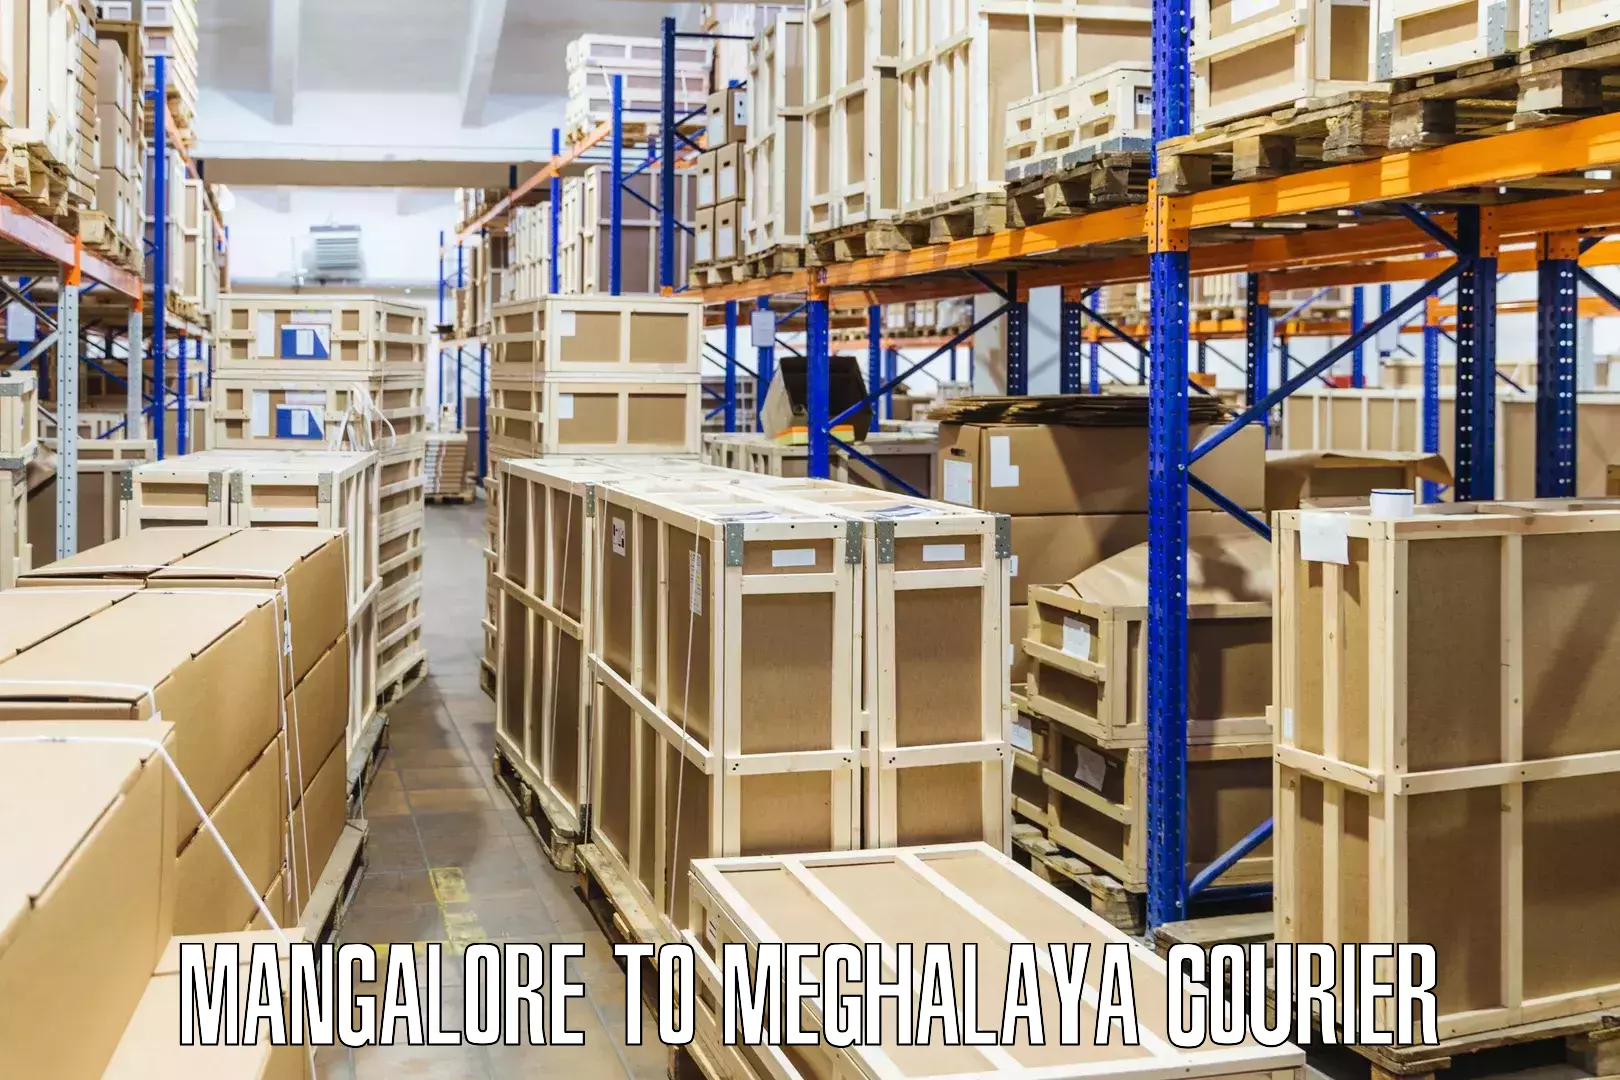 Flexible parcel services Mangalore to West Garo Hills